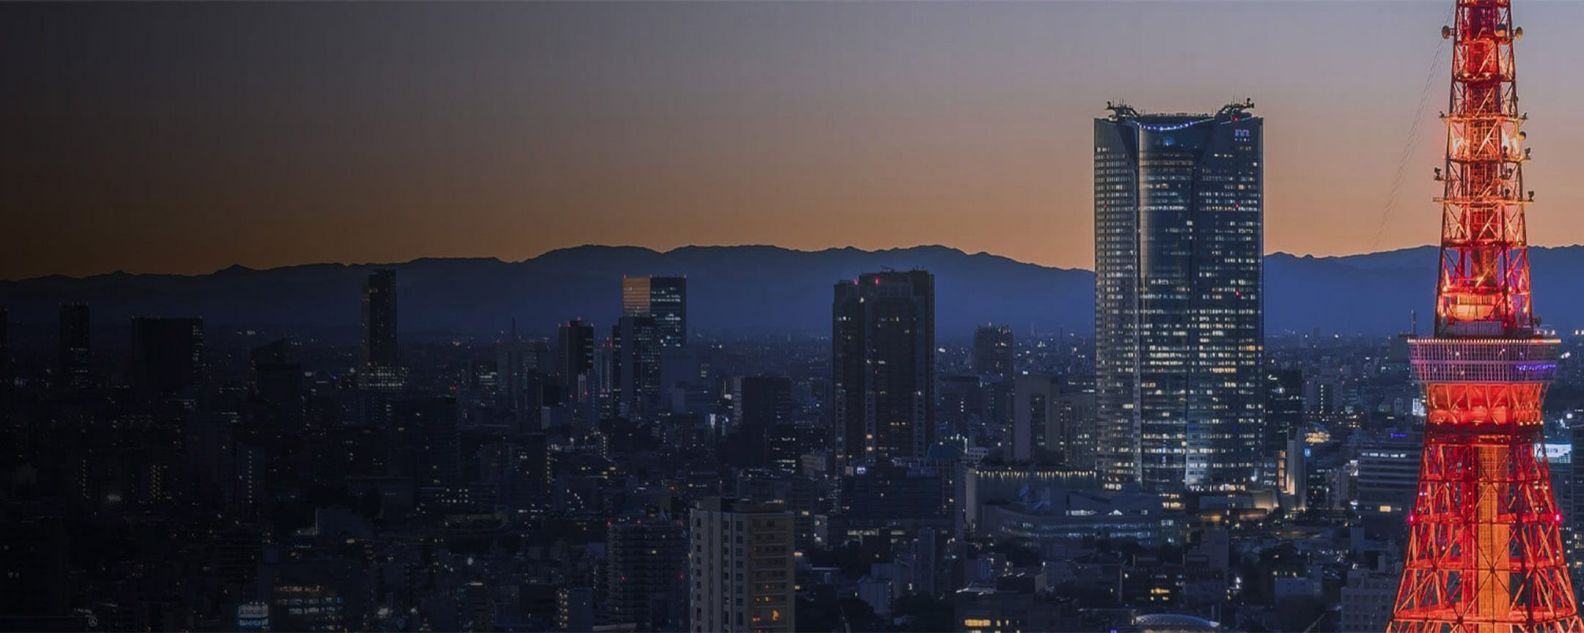 Gedung pencakar langit Tokyo yang gemerlapan berlatar cakrawala di malam hari